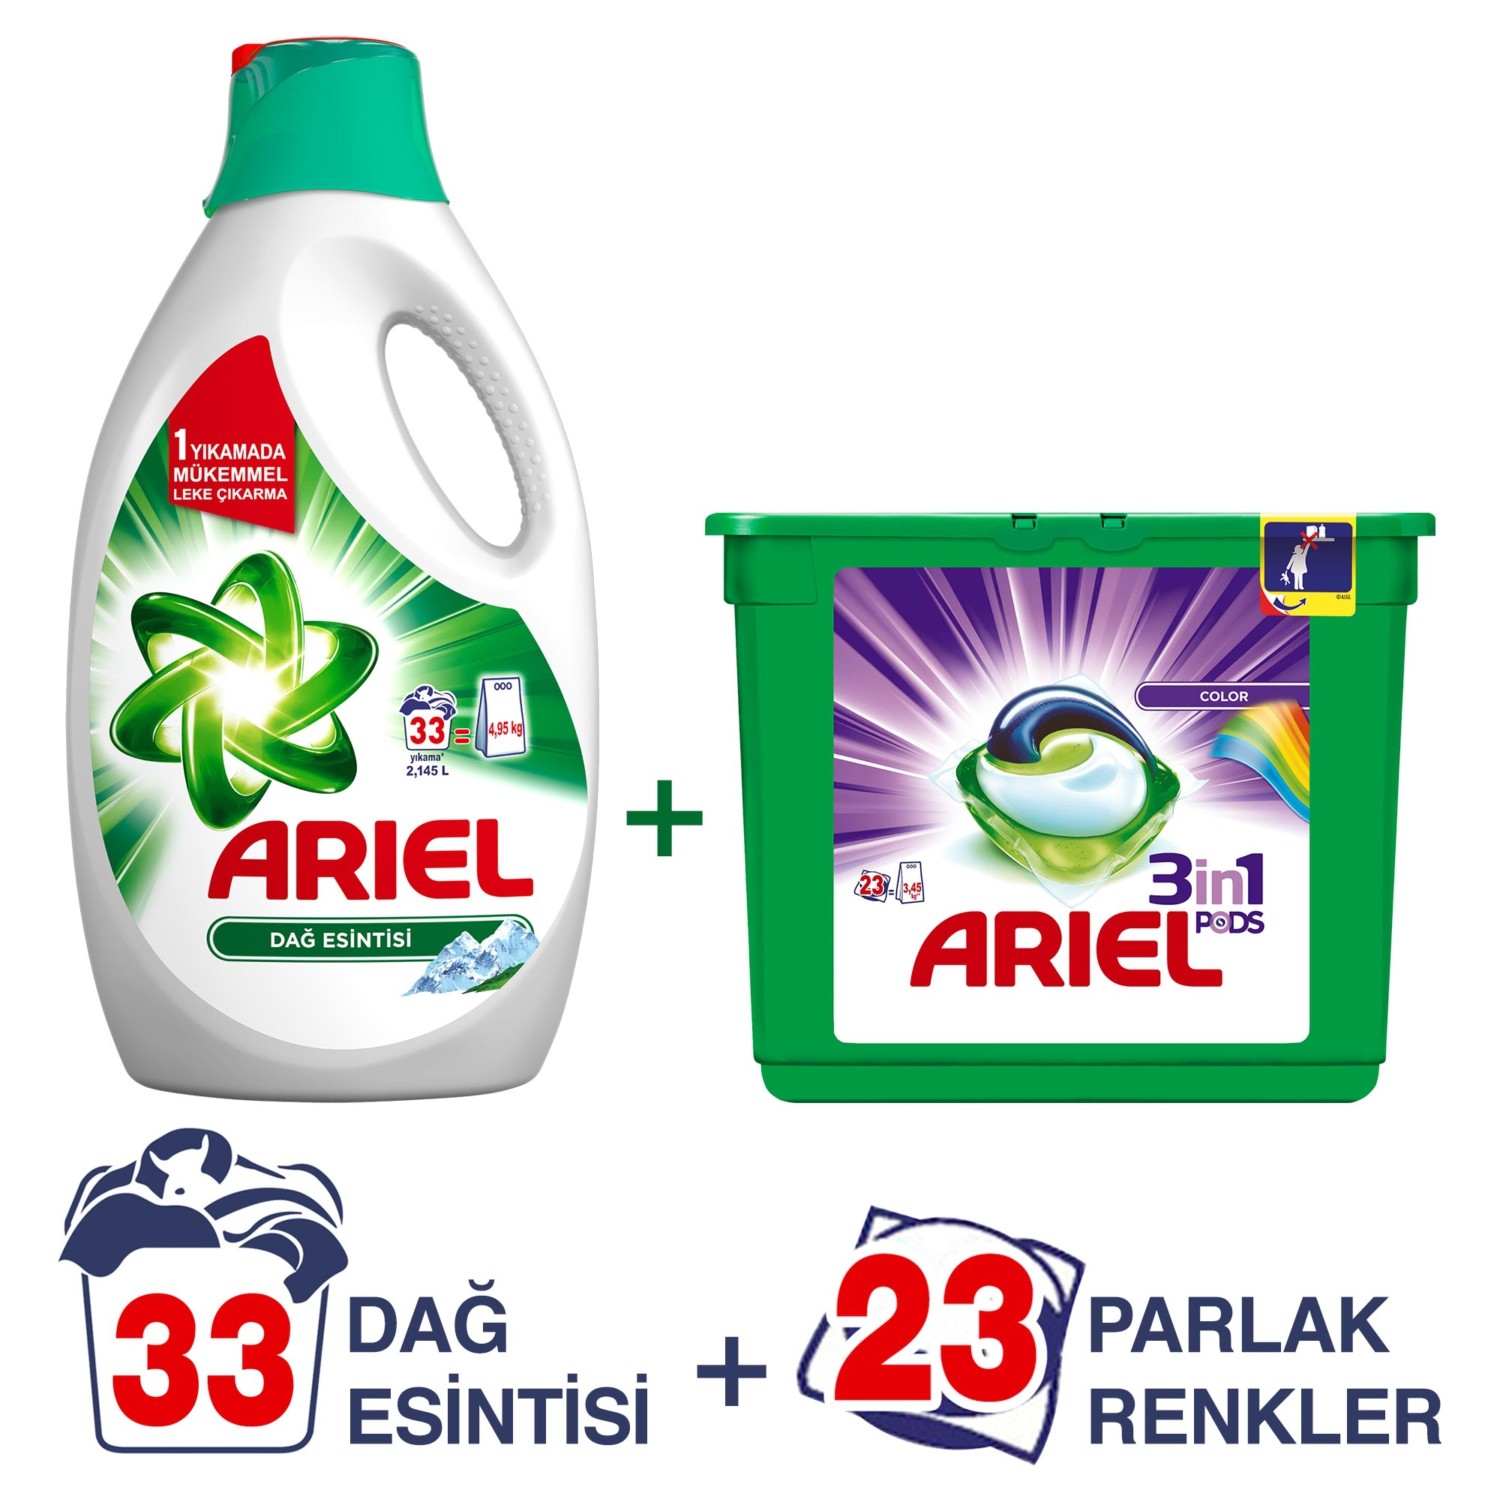 Ariel 3�ü 1 Arada Pods Sıvı Çamaşır Deterjanı Kapsülü Parlak Fiyatı